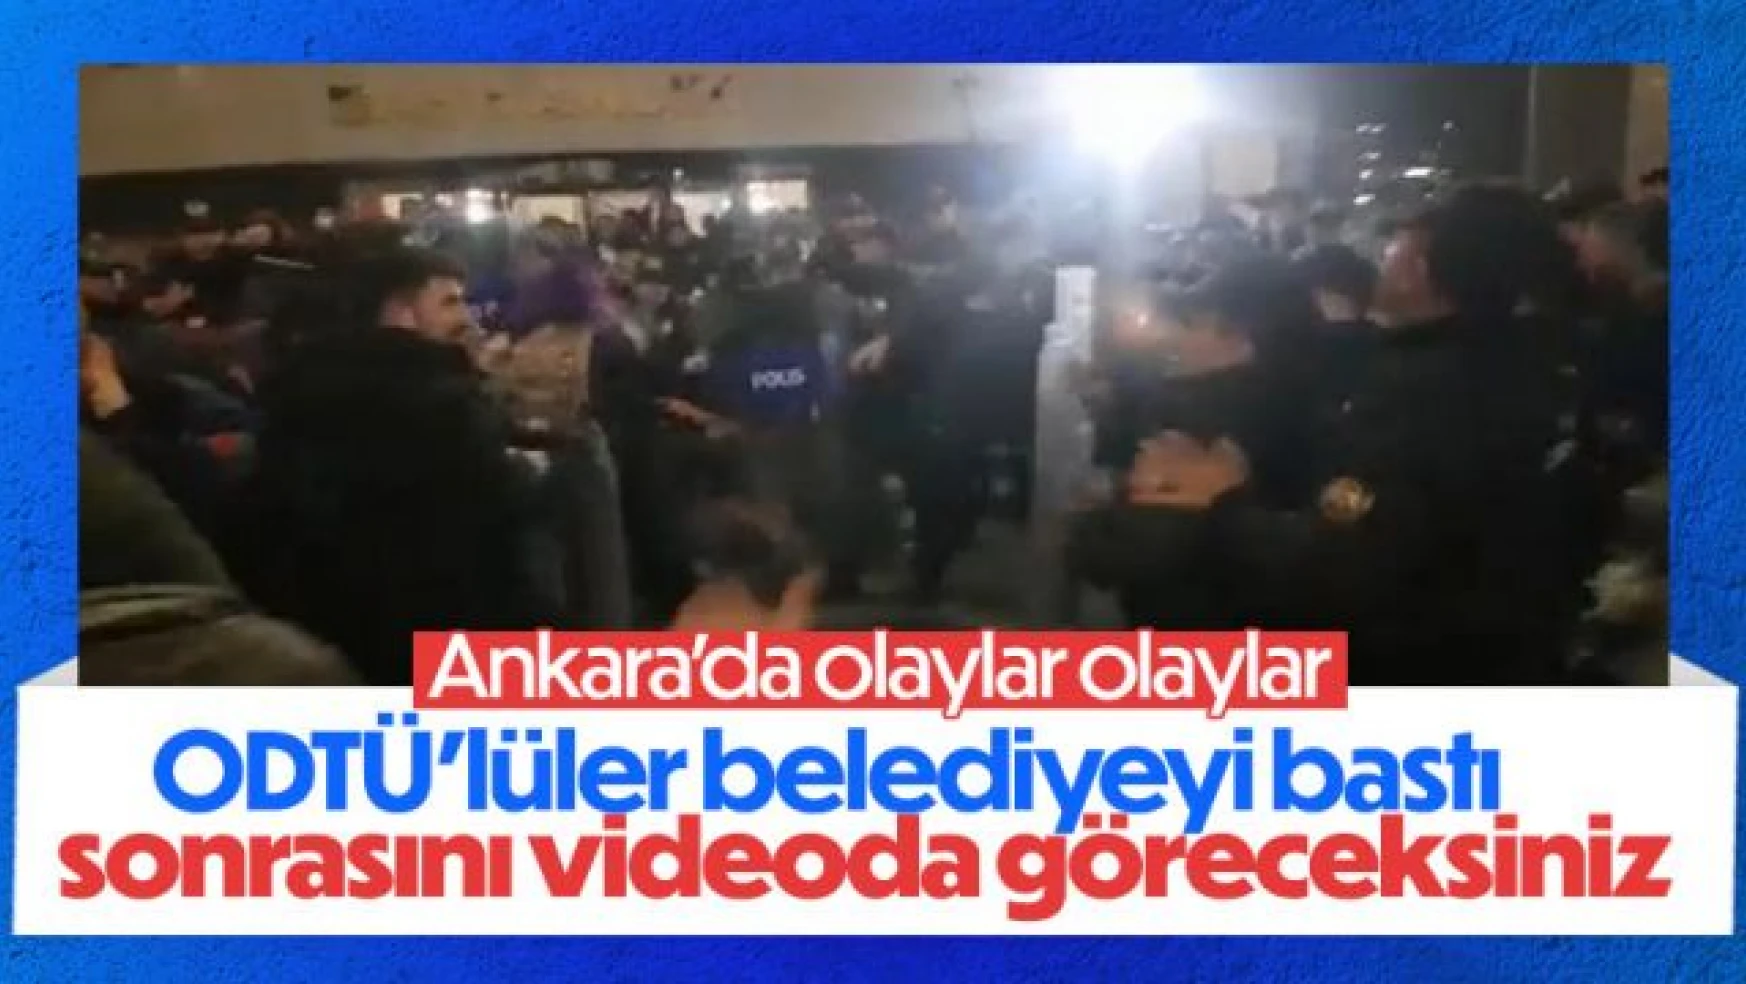 ODTÜ'lüler Ankara Büyükşehir Belediyesi'nin binasını bastı